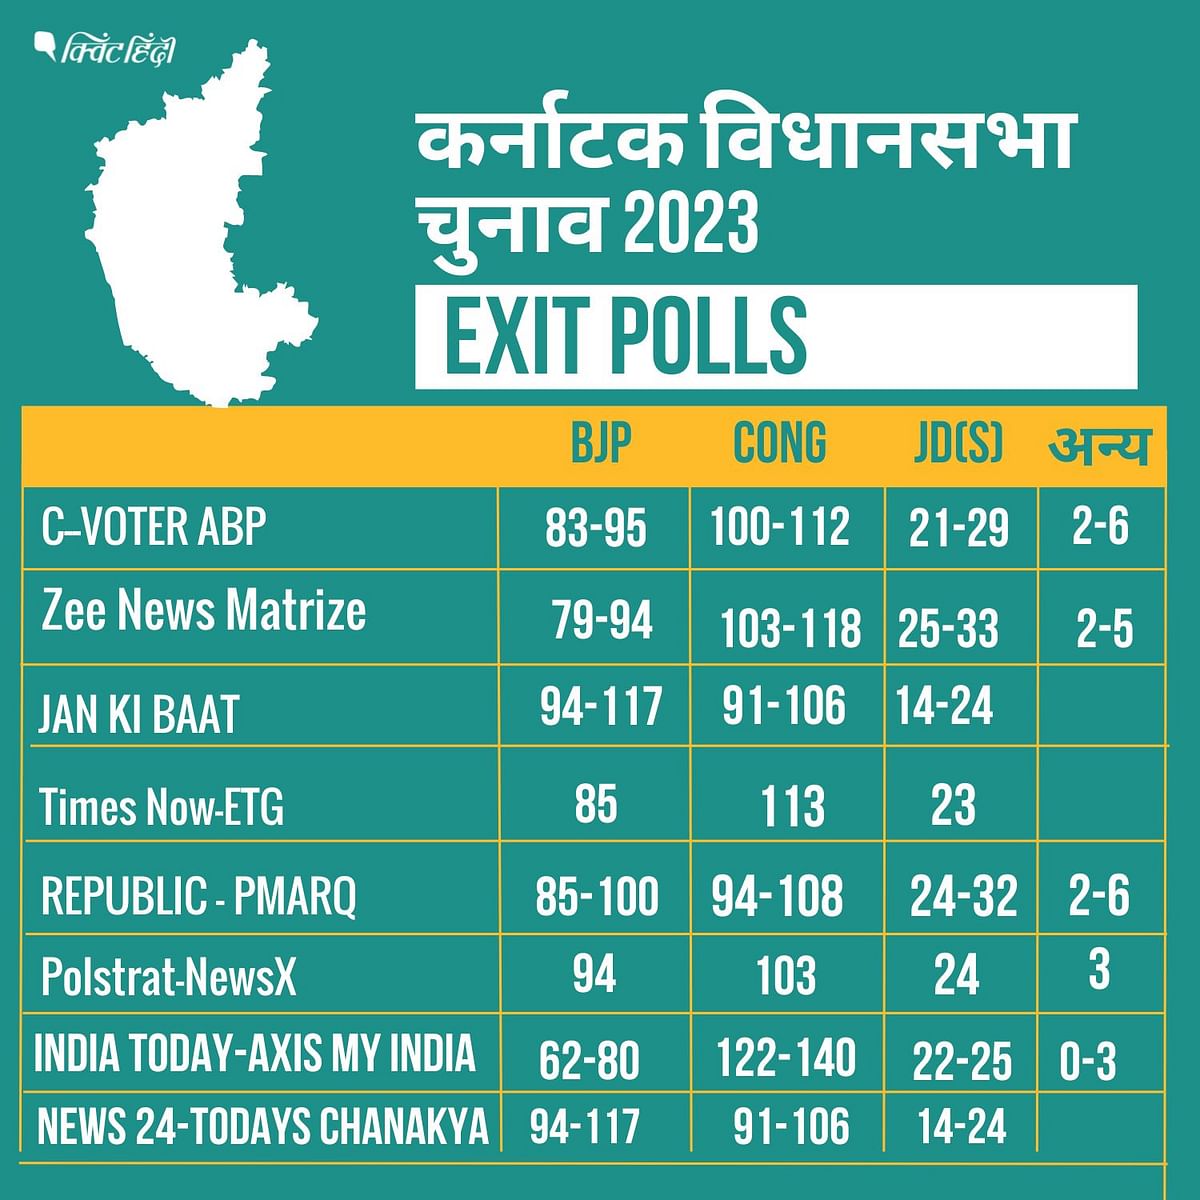 Karnataka Election Results: कर्नाटक में कांग्रेस को स्पष्ट बहुमत, जबकि एक एग्जिट पोल ने बीजेपी को बहुमत बताया था 